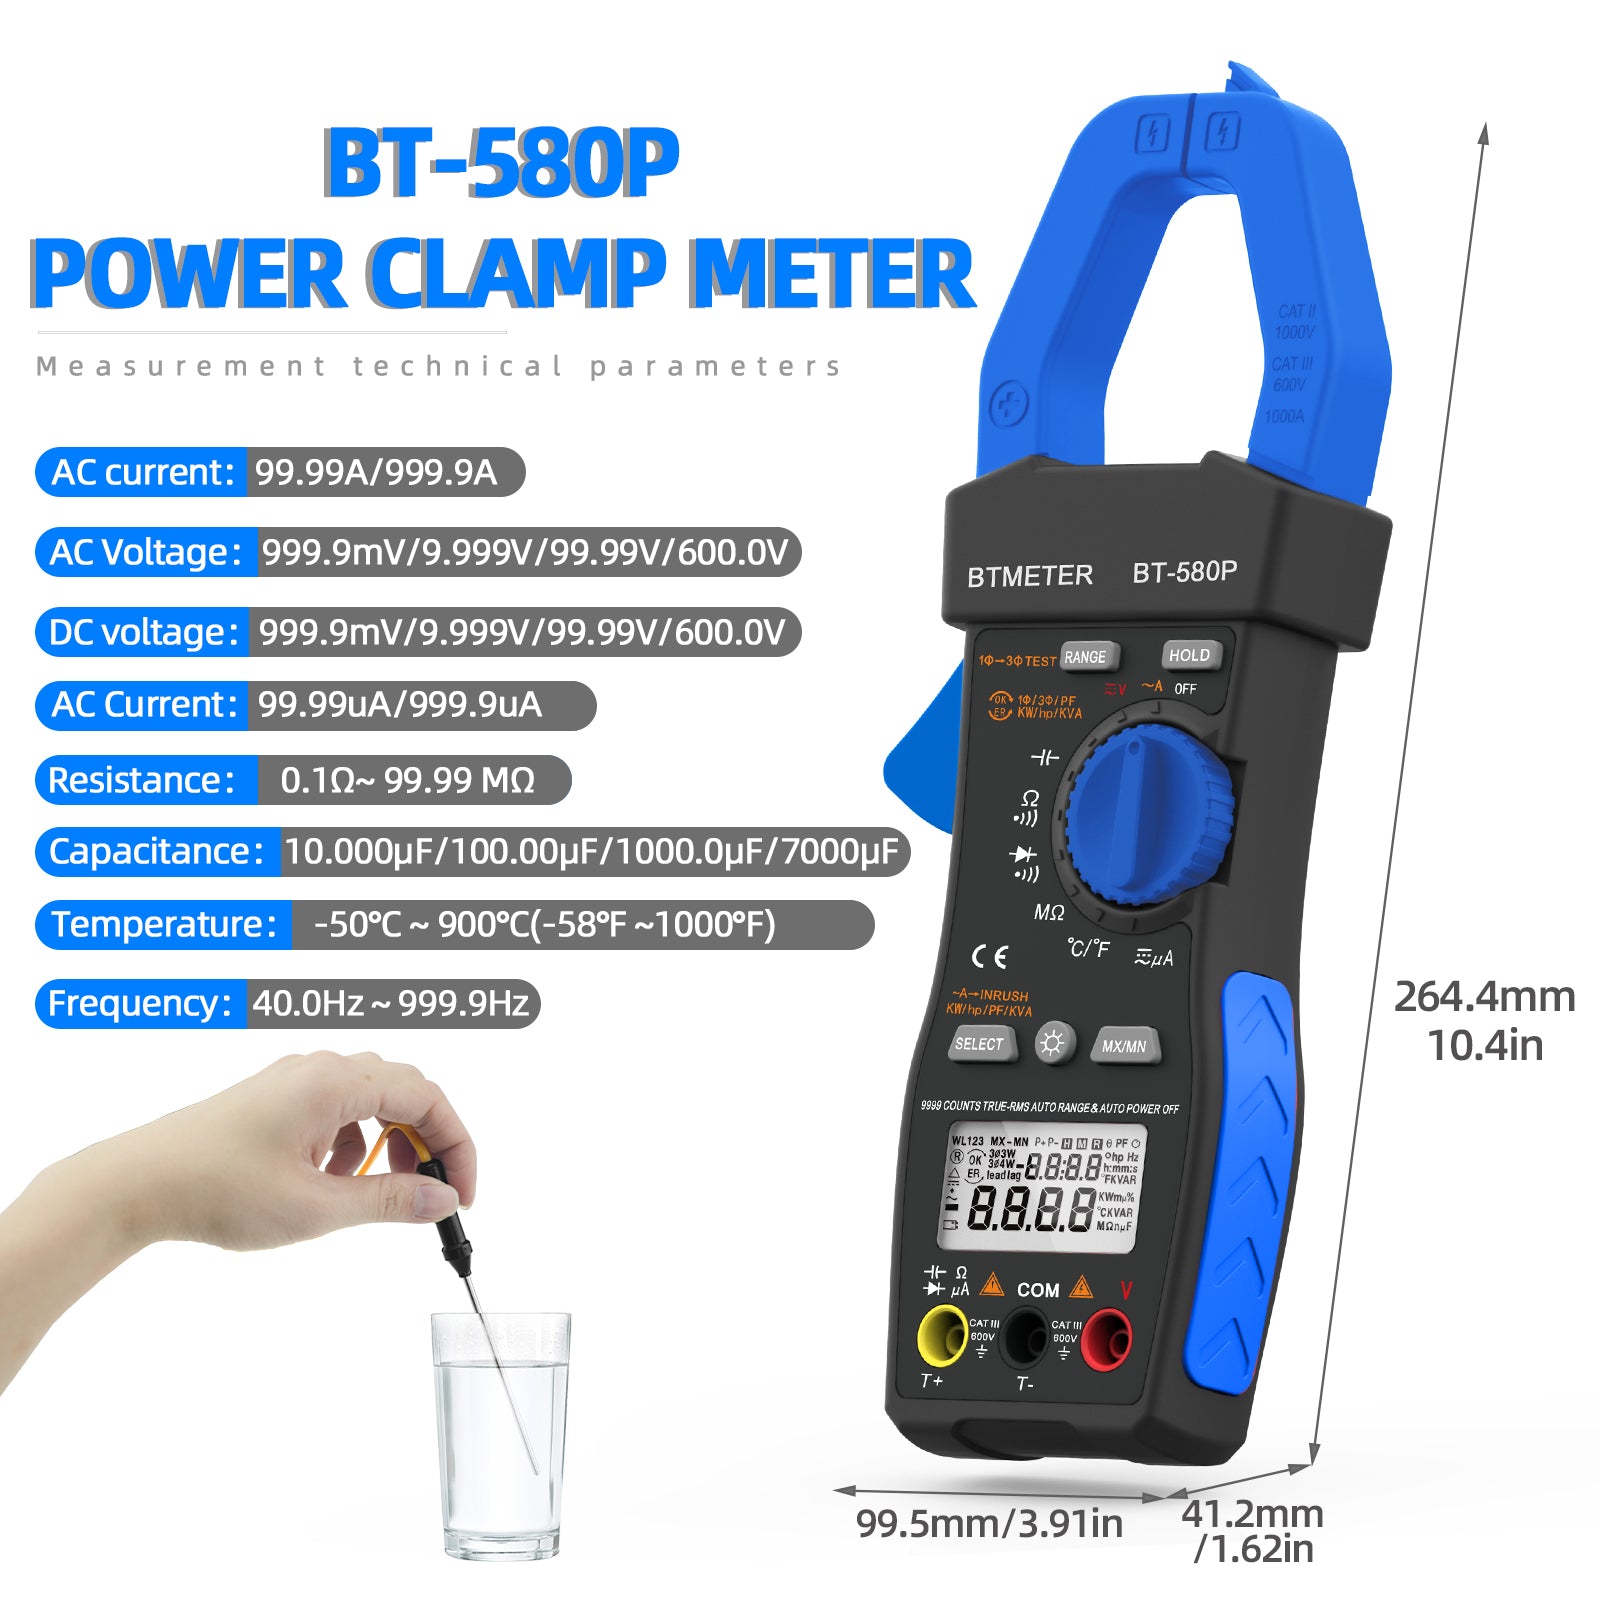 Power Clamp Meter BT-580P - btmeter-store